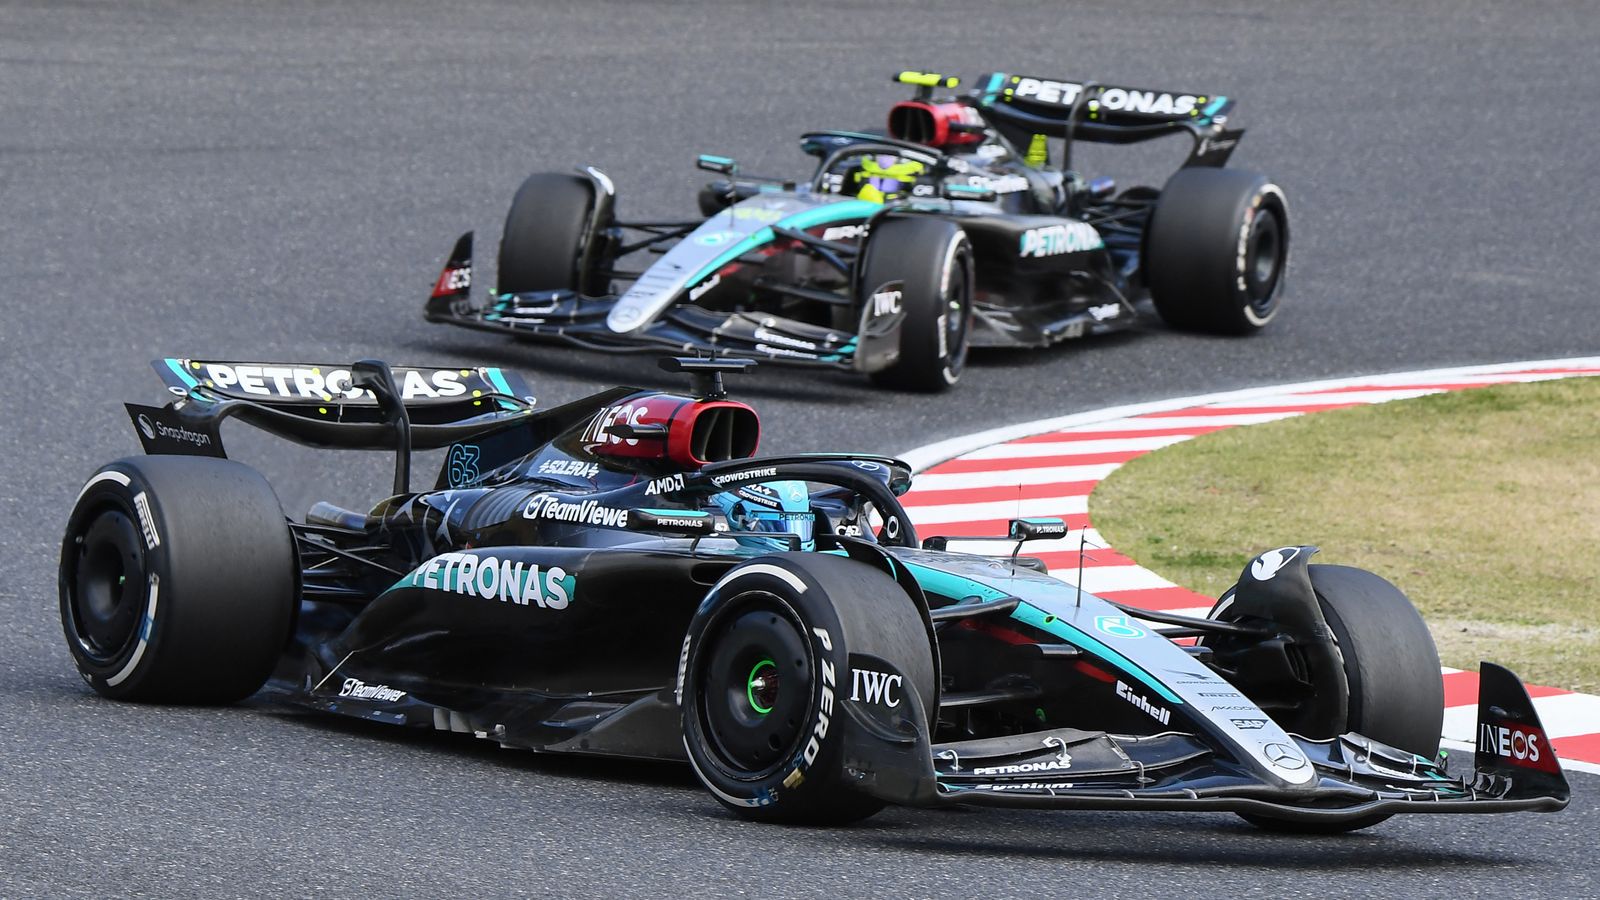 Understanding Mercedes' Tactical Move in F1 Japan